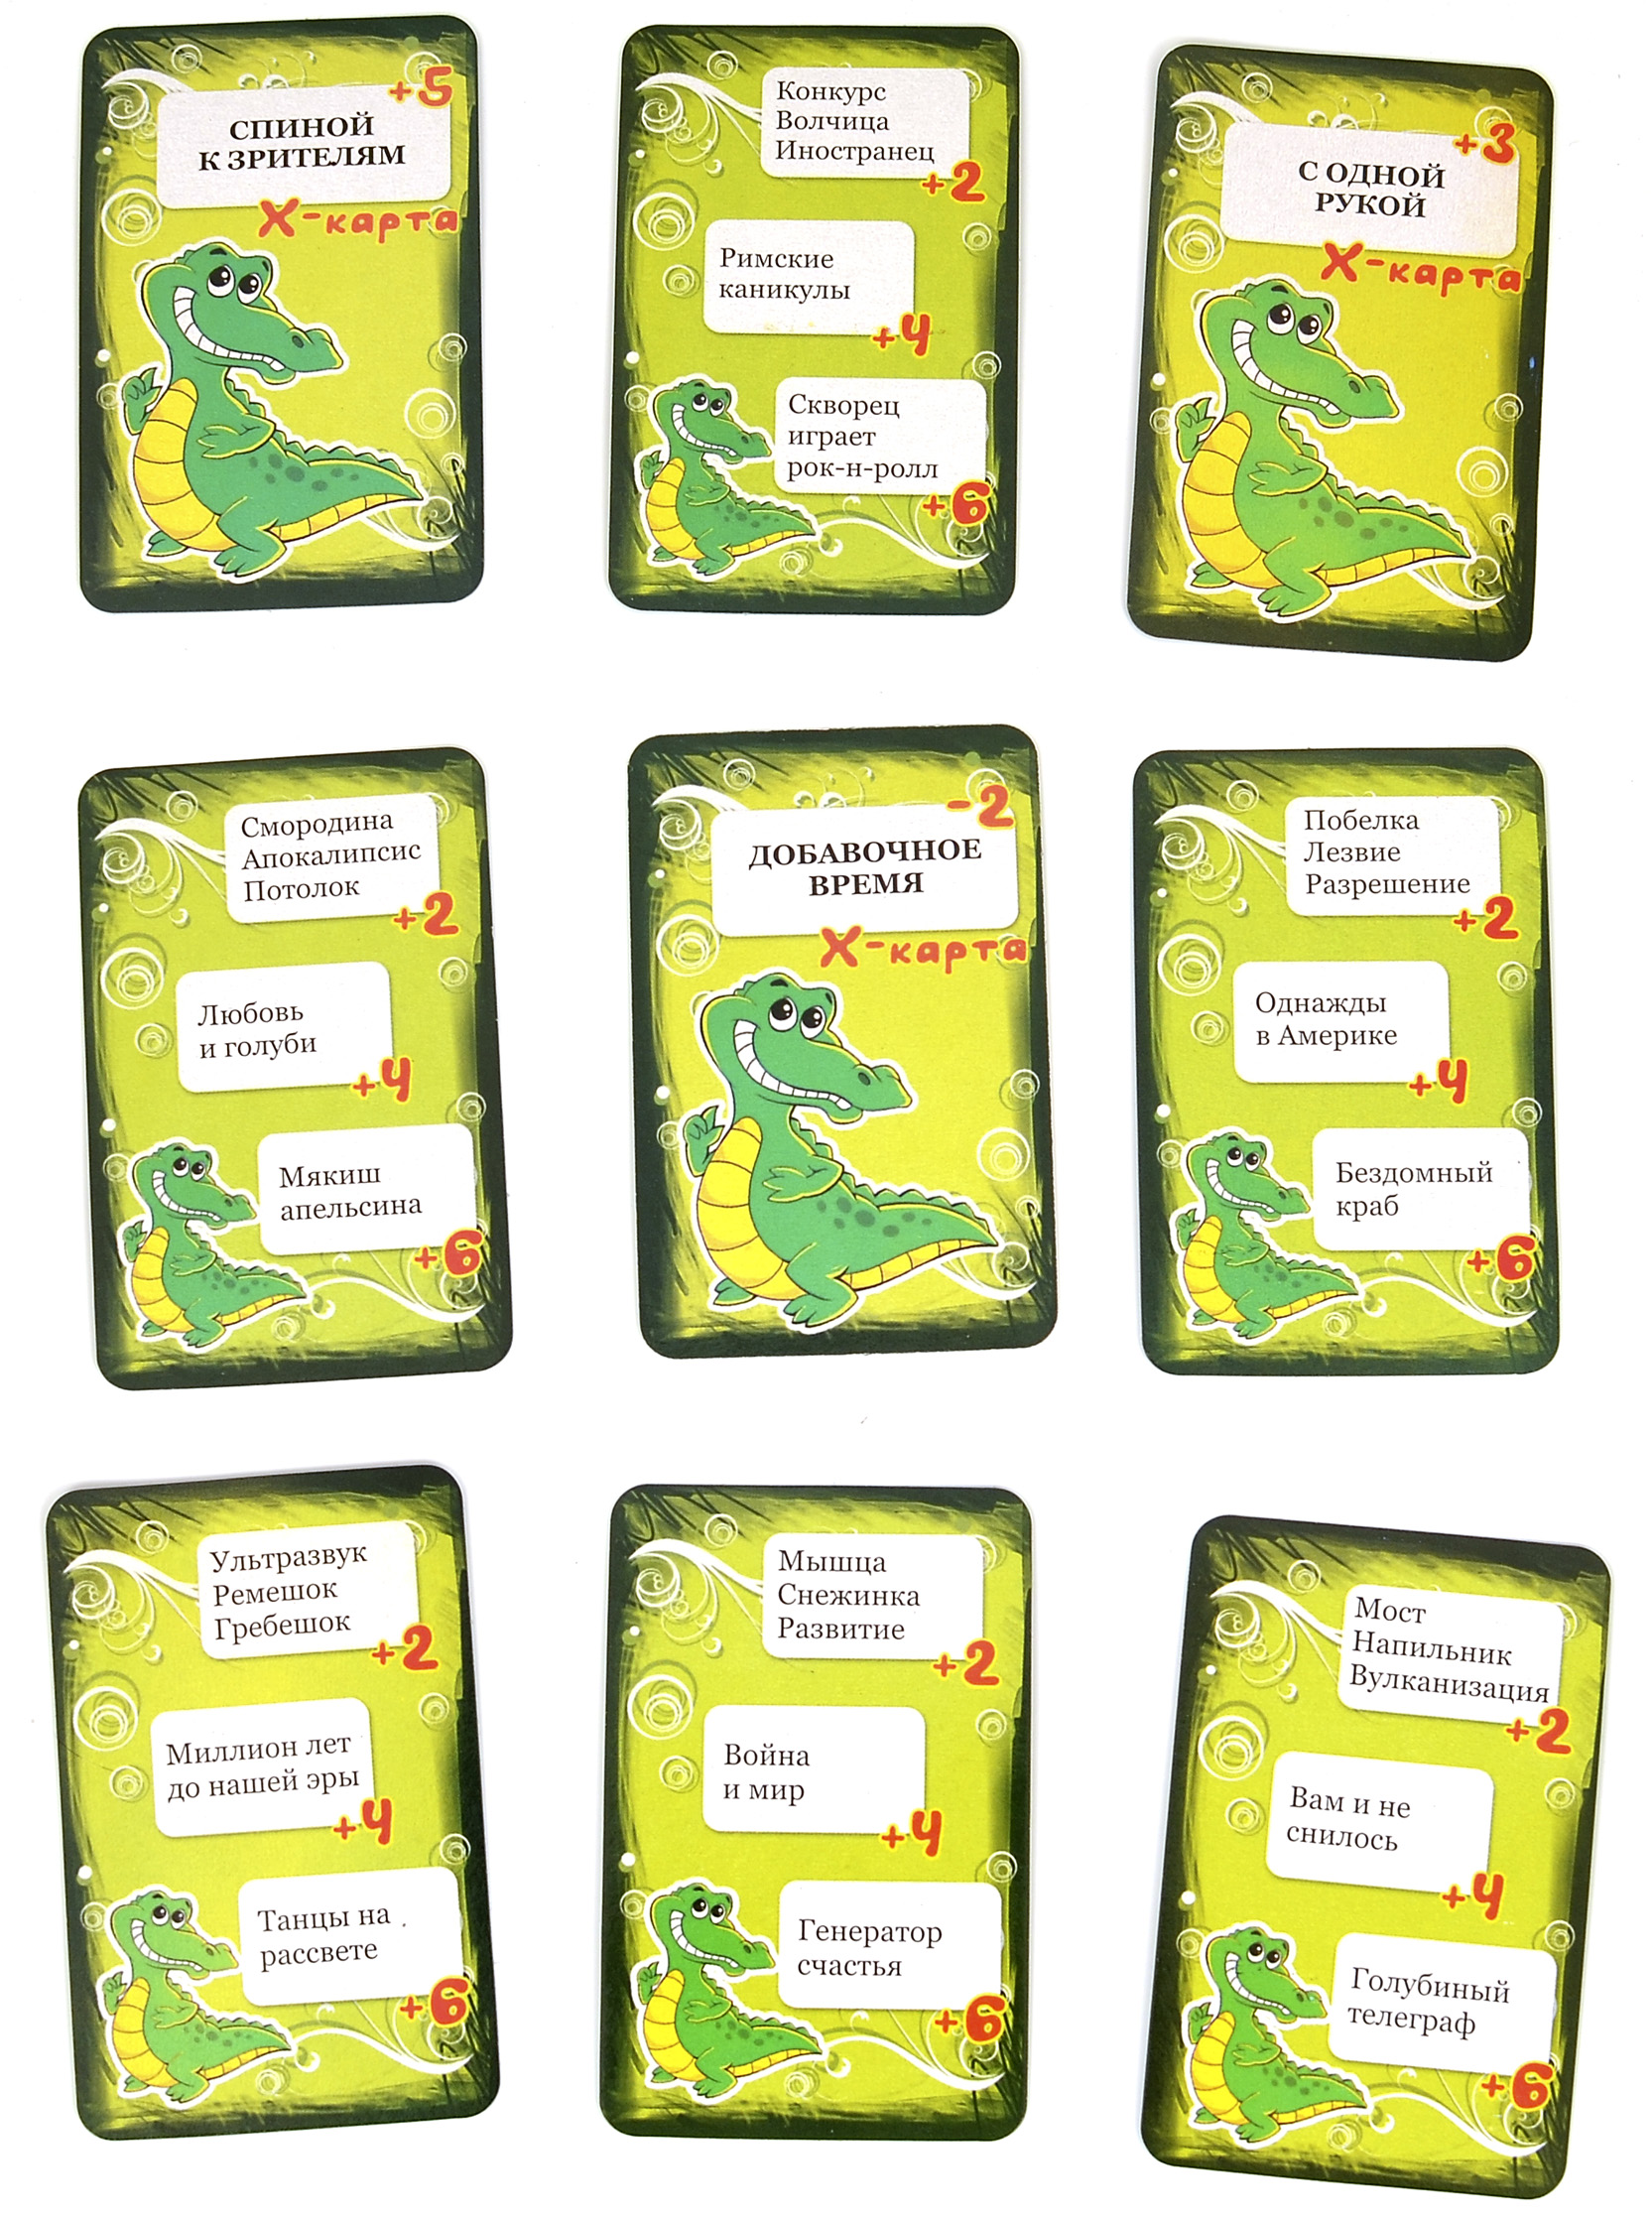 Картинки для игры крокодил. Карточки для крокодила. Крокодил карты. Игра крокодил. Игровые карточки крокодил.